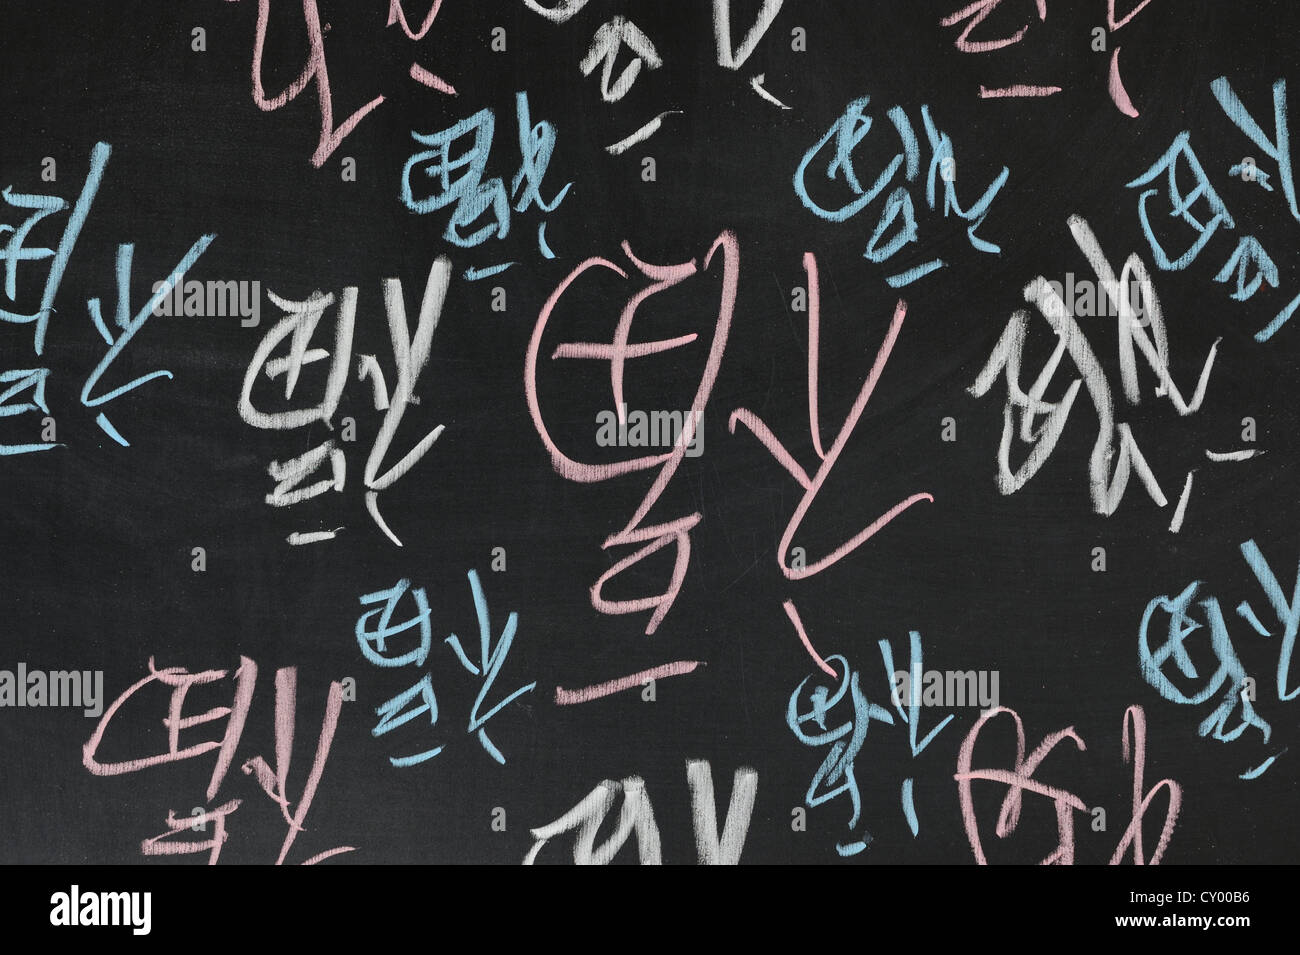 Dibujo de la pizarra - Grupo de invertida de la palabra china "Fu" que significa "felicidad ha llegado' en China Foto de stock